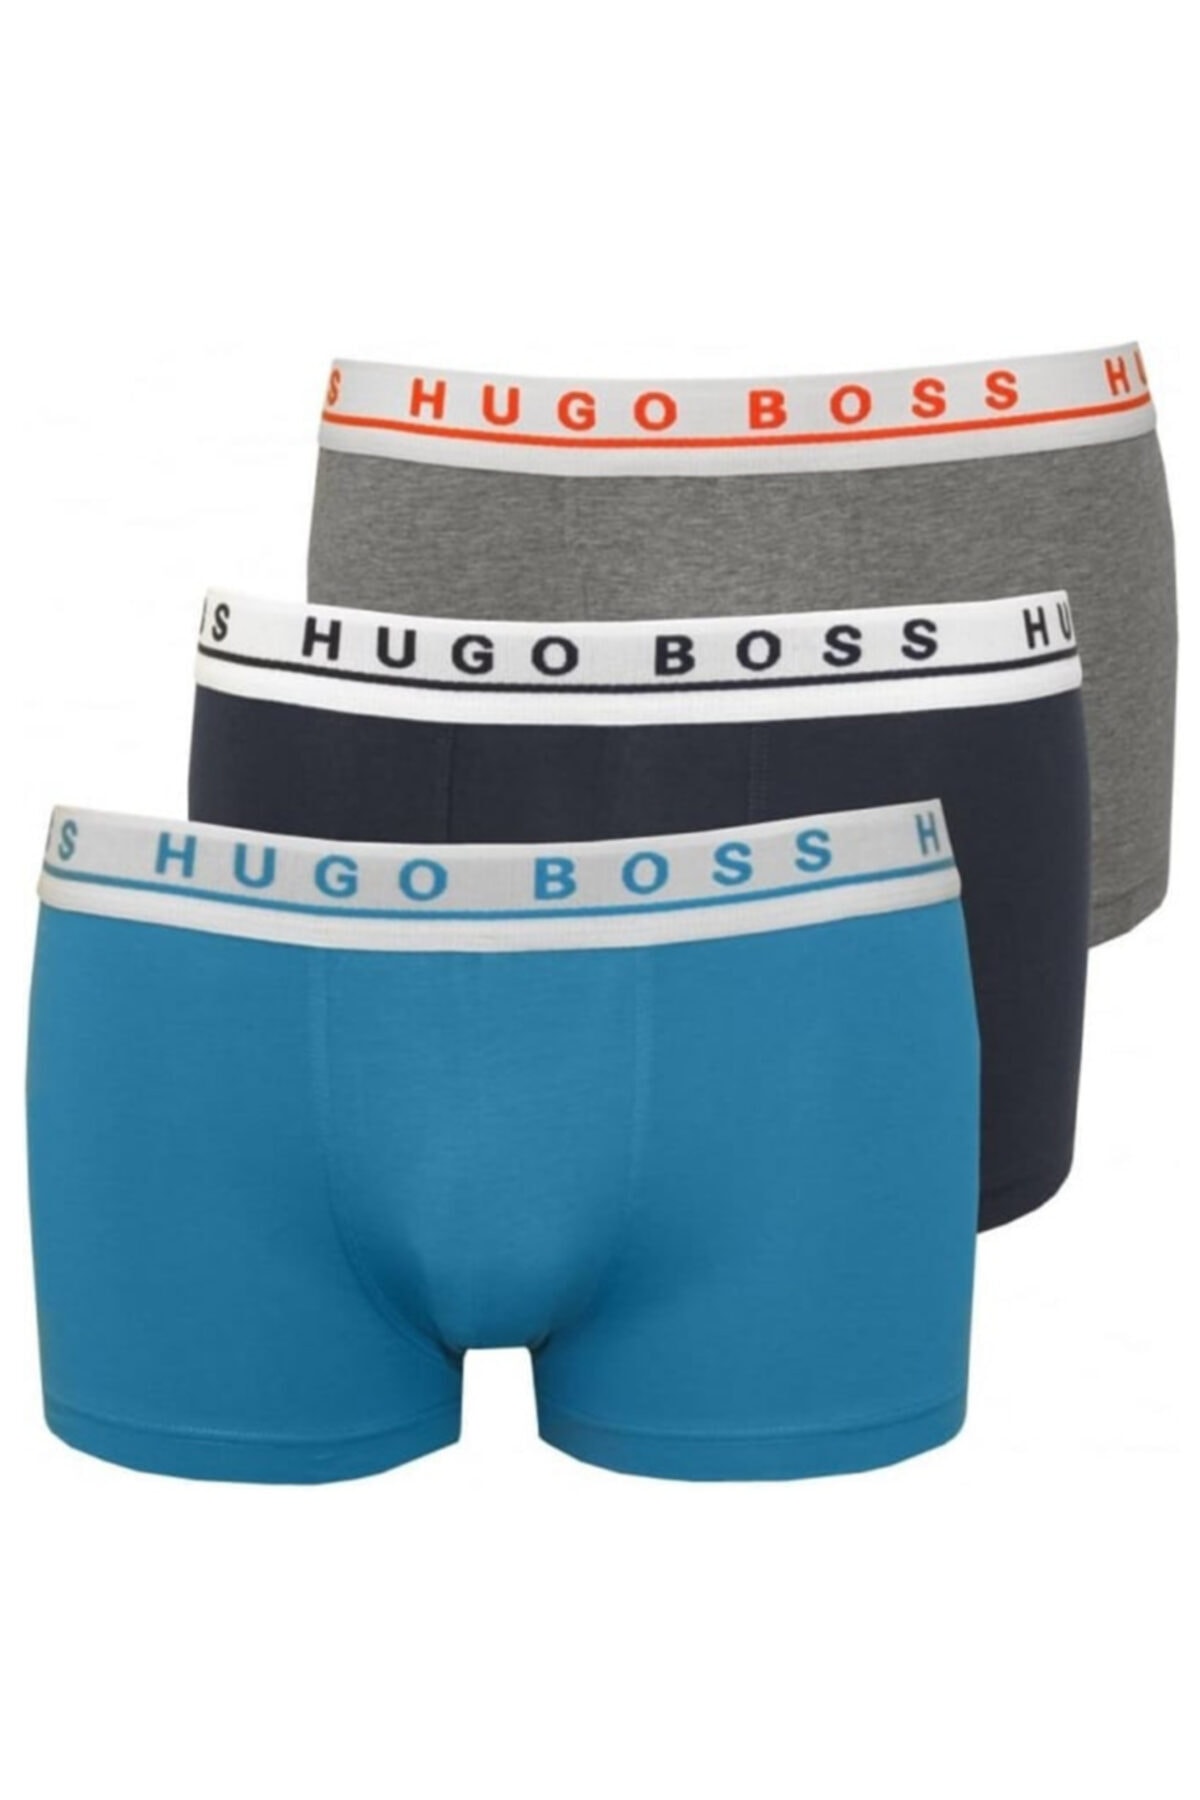 Hugo Boss Erkek 3lü Boxer 50381120 U005818